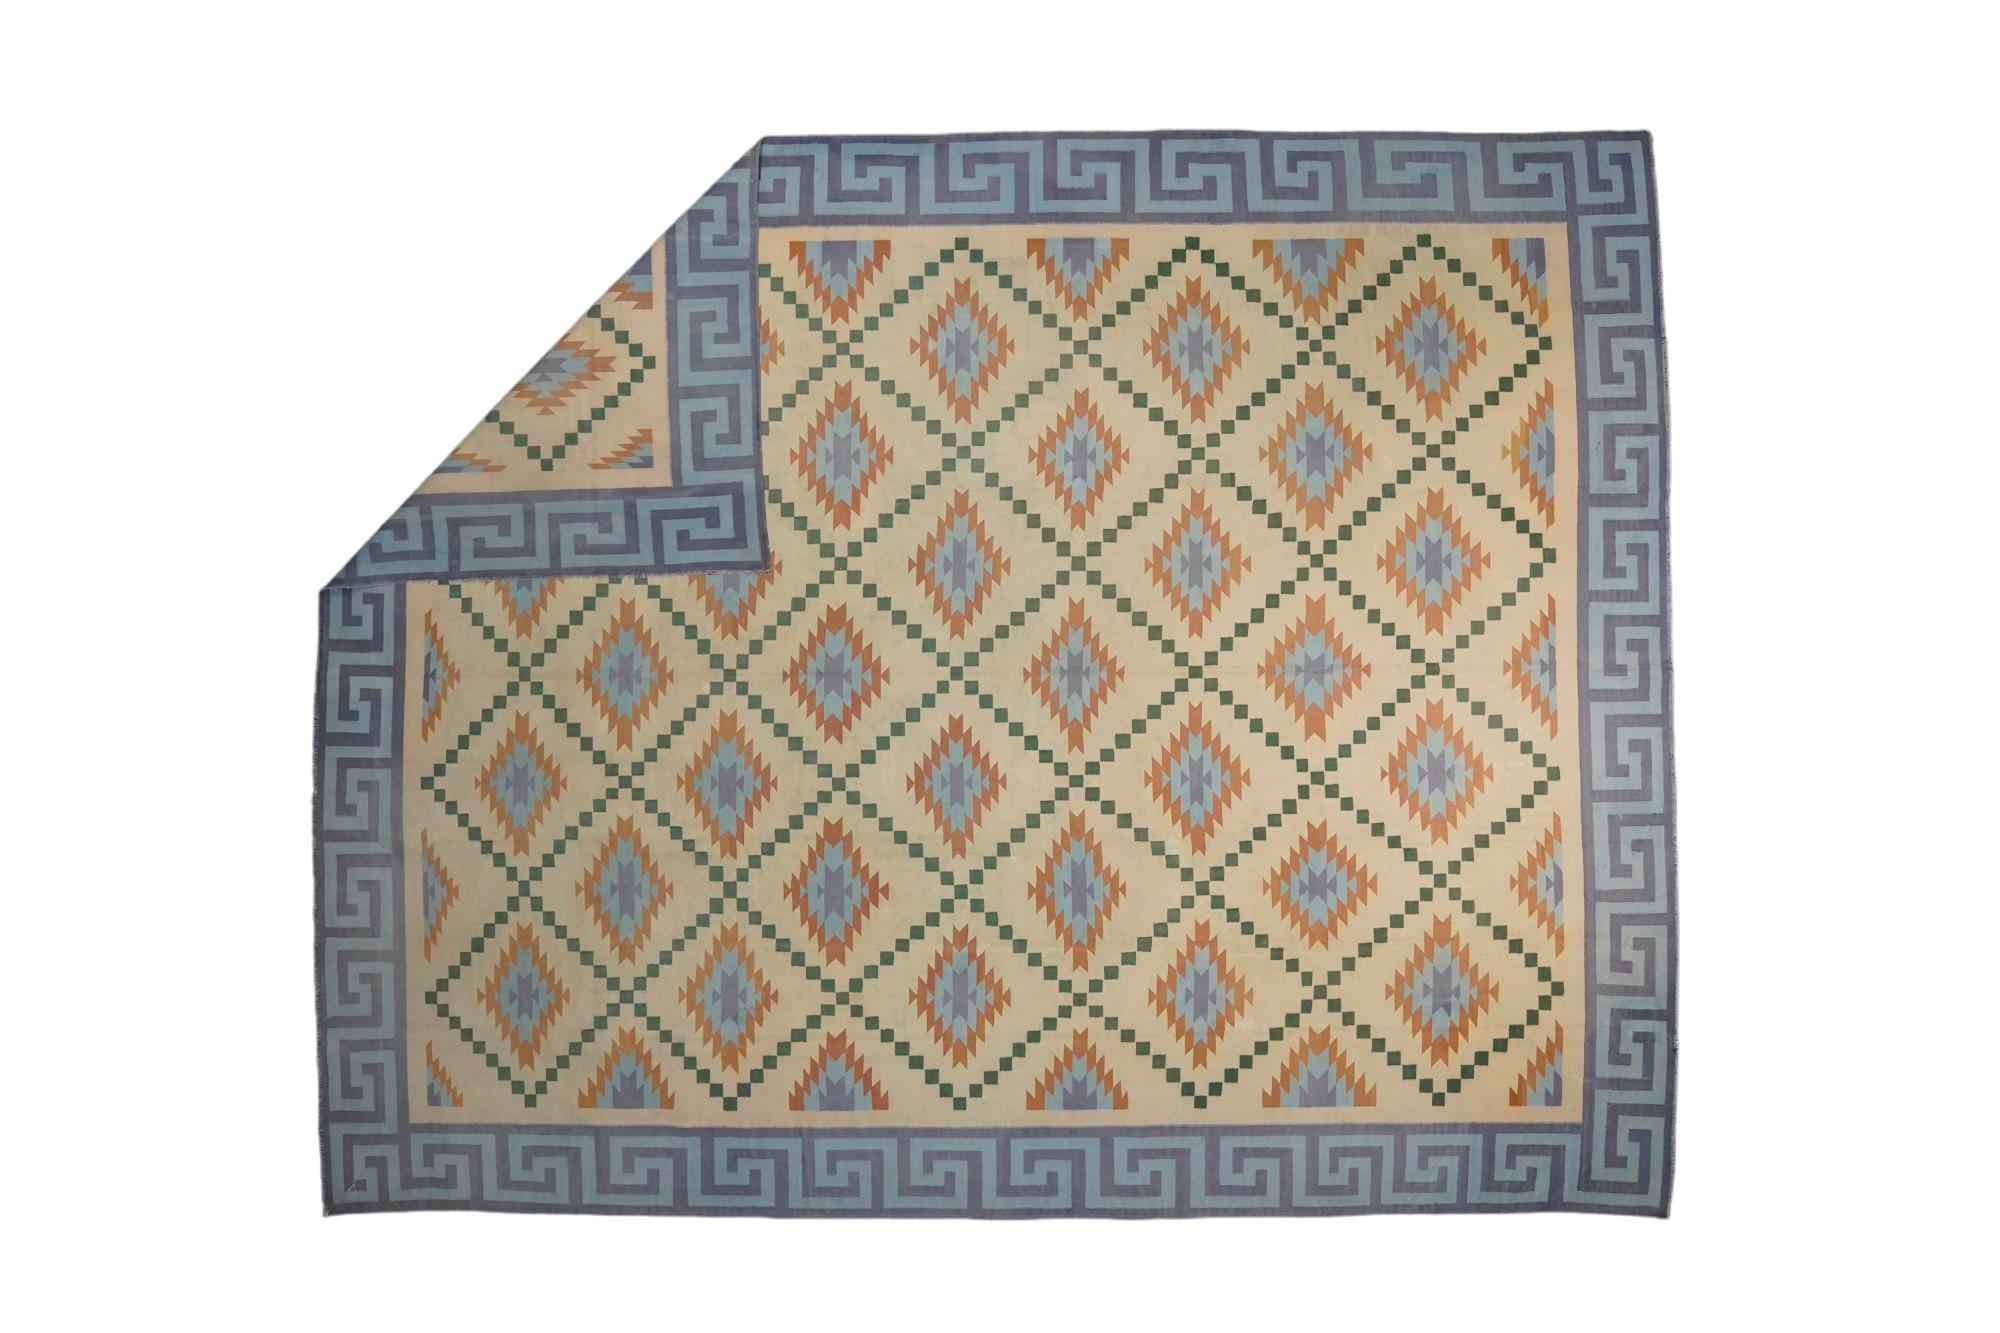 Dieser 10x13 große Teppich ist ein seltener Vintage-Dhurrie-Teppich aus einer aufregenden neuen Kuration von Rug &New Kilim aus der Mitte des Jahrhunderts. Das handgewebte Flachgewebe aus Wolle stammt aus Indien (ca. 1950-1960) und ist in Cremetönen